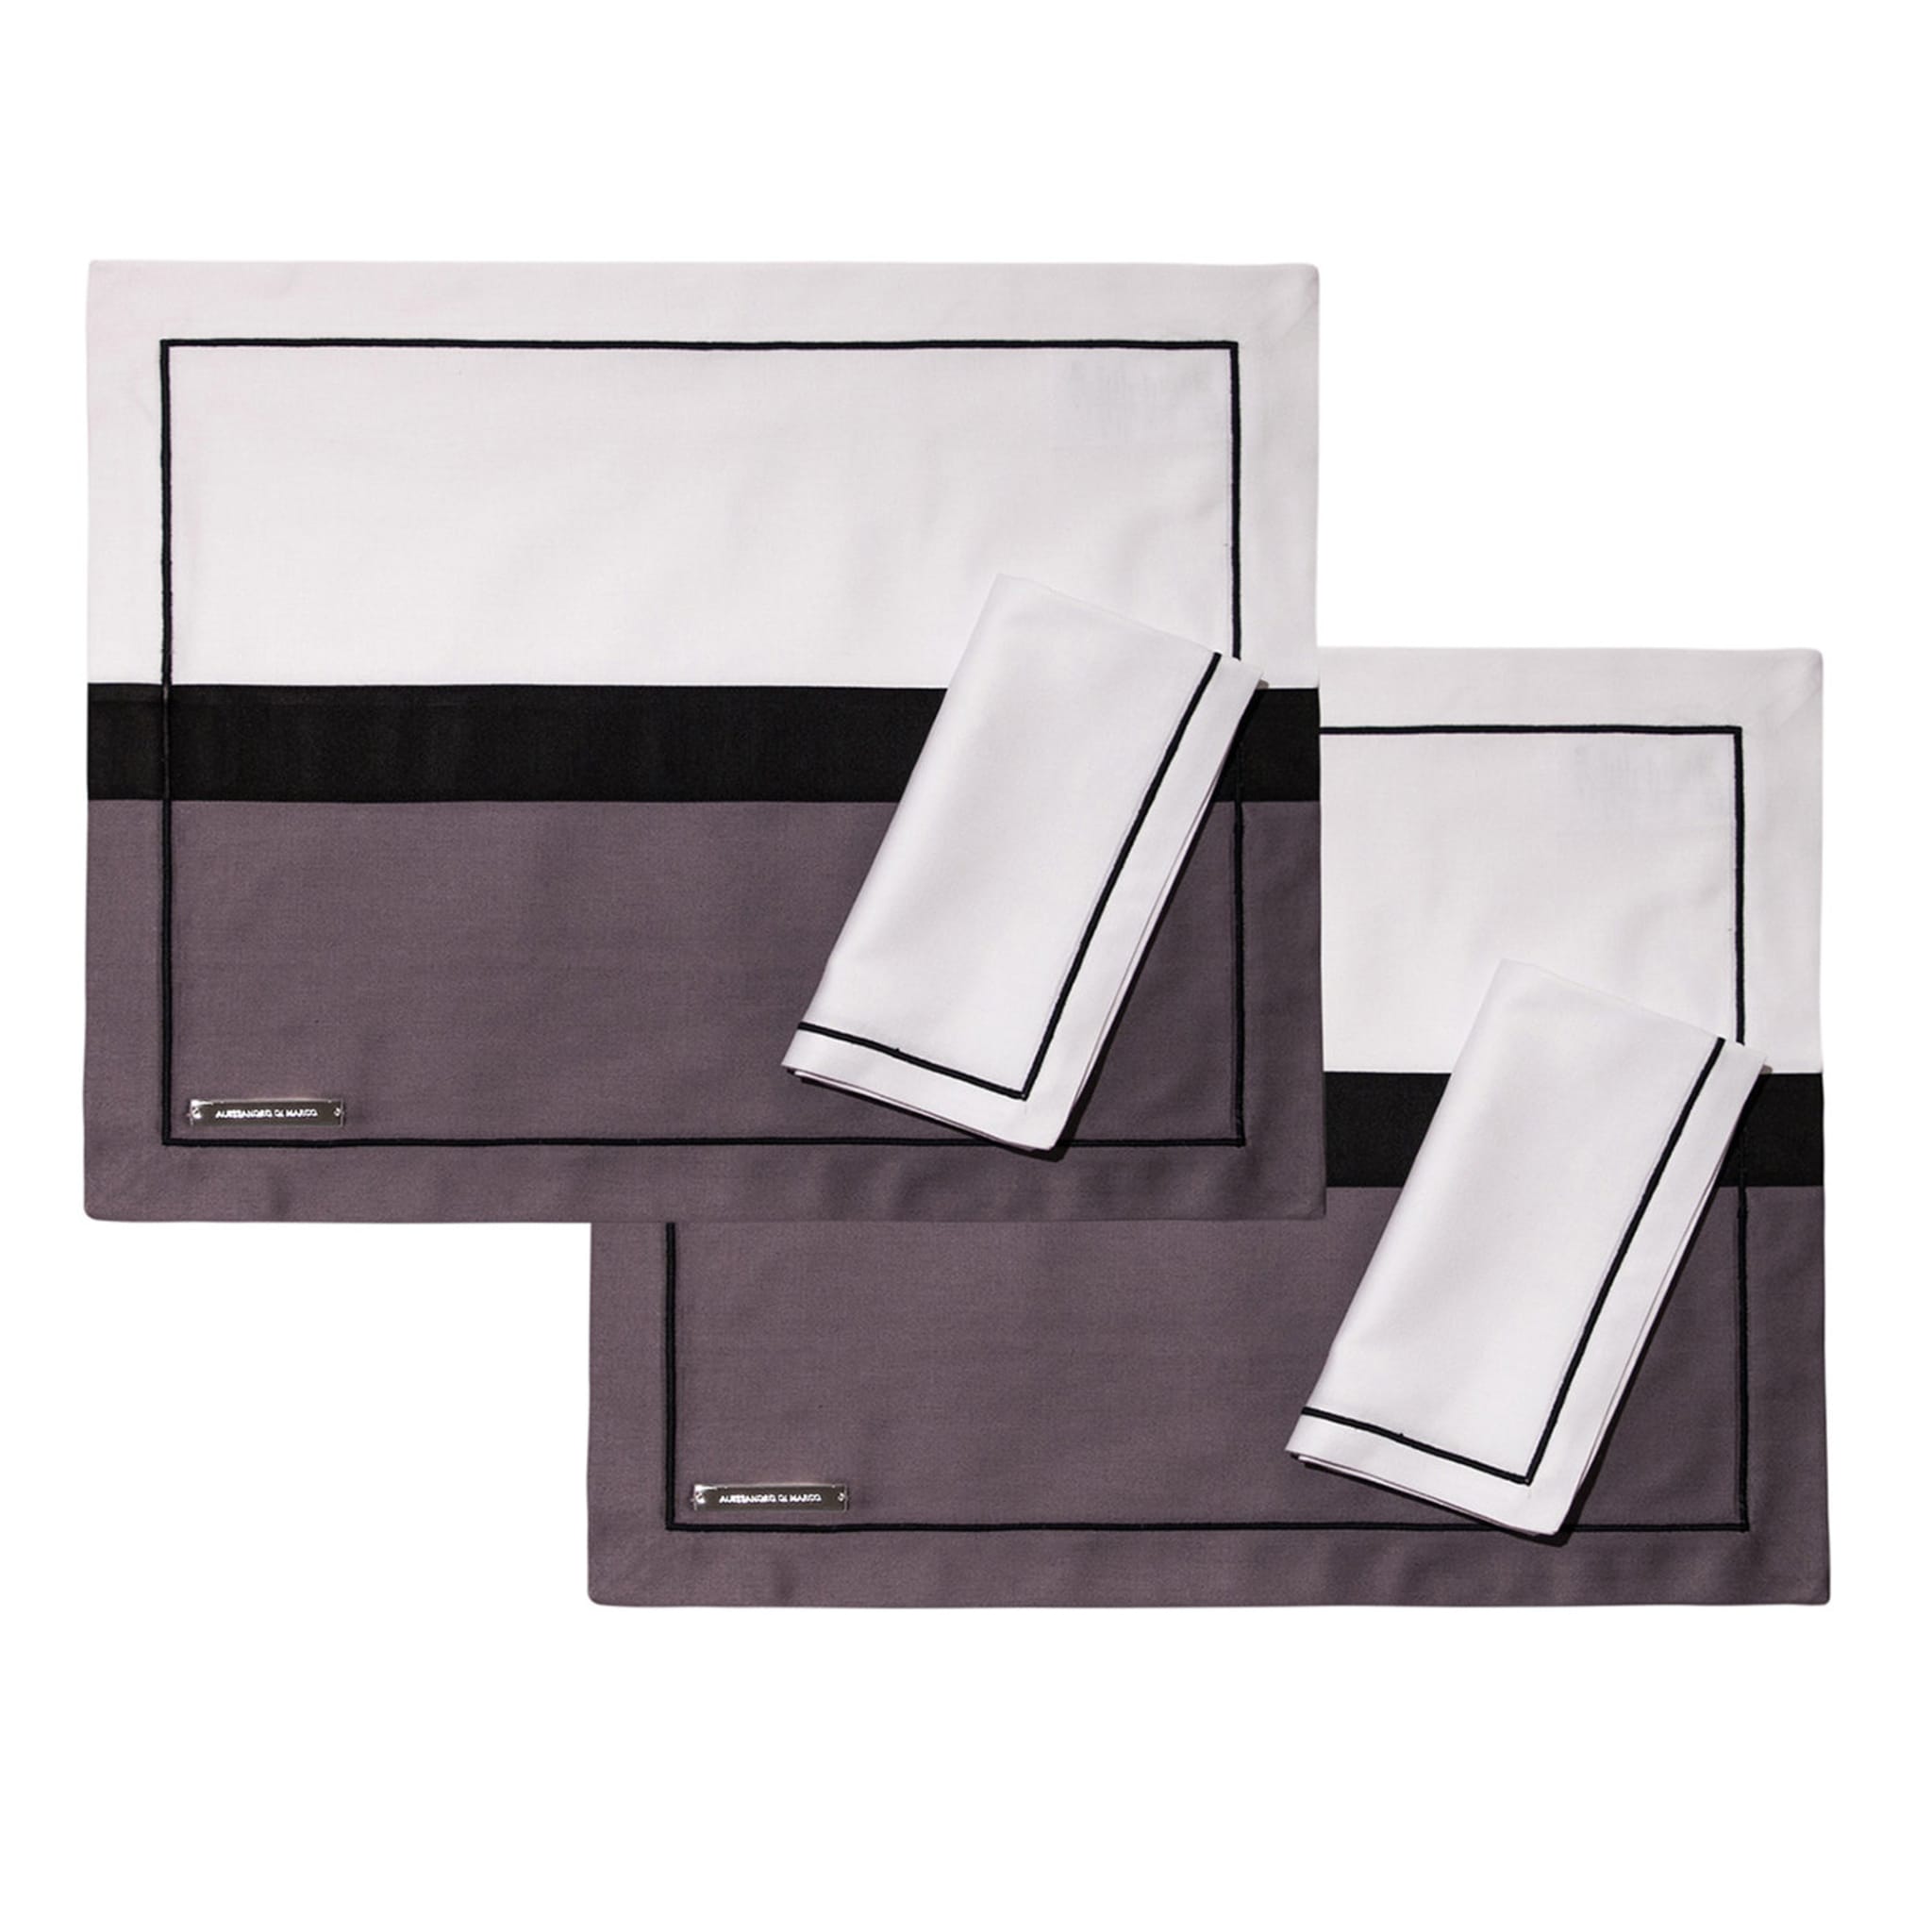 Tovagliette e tovaglioli - Due tonalità di grigio e bianco - Vista principale